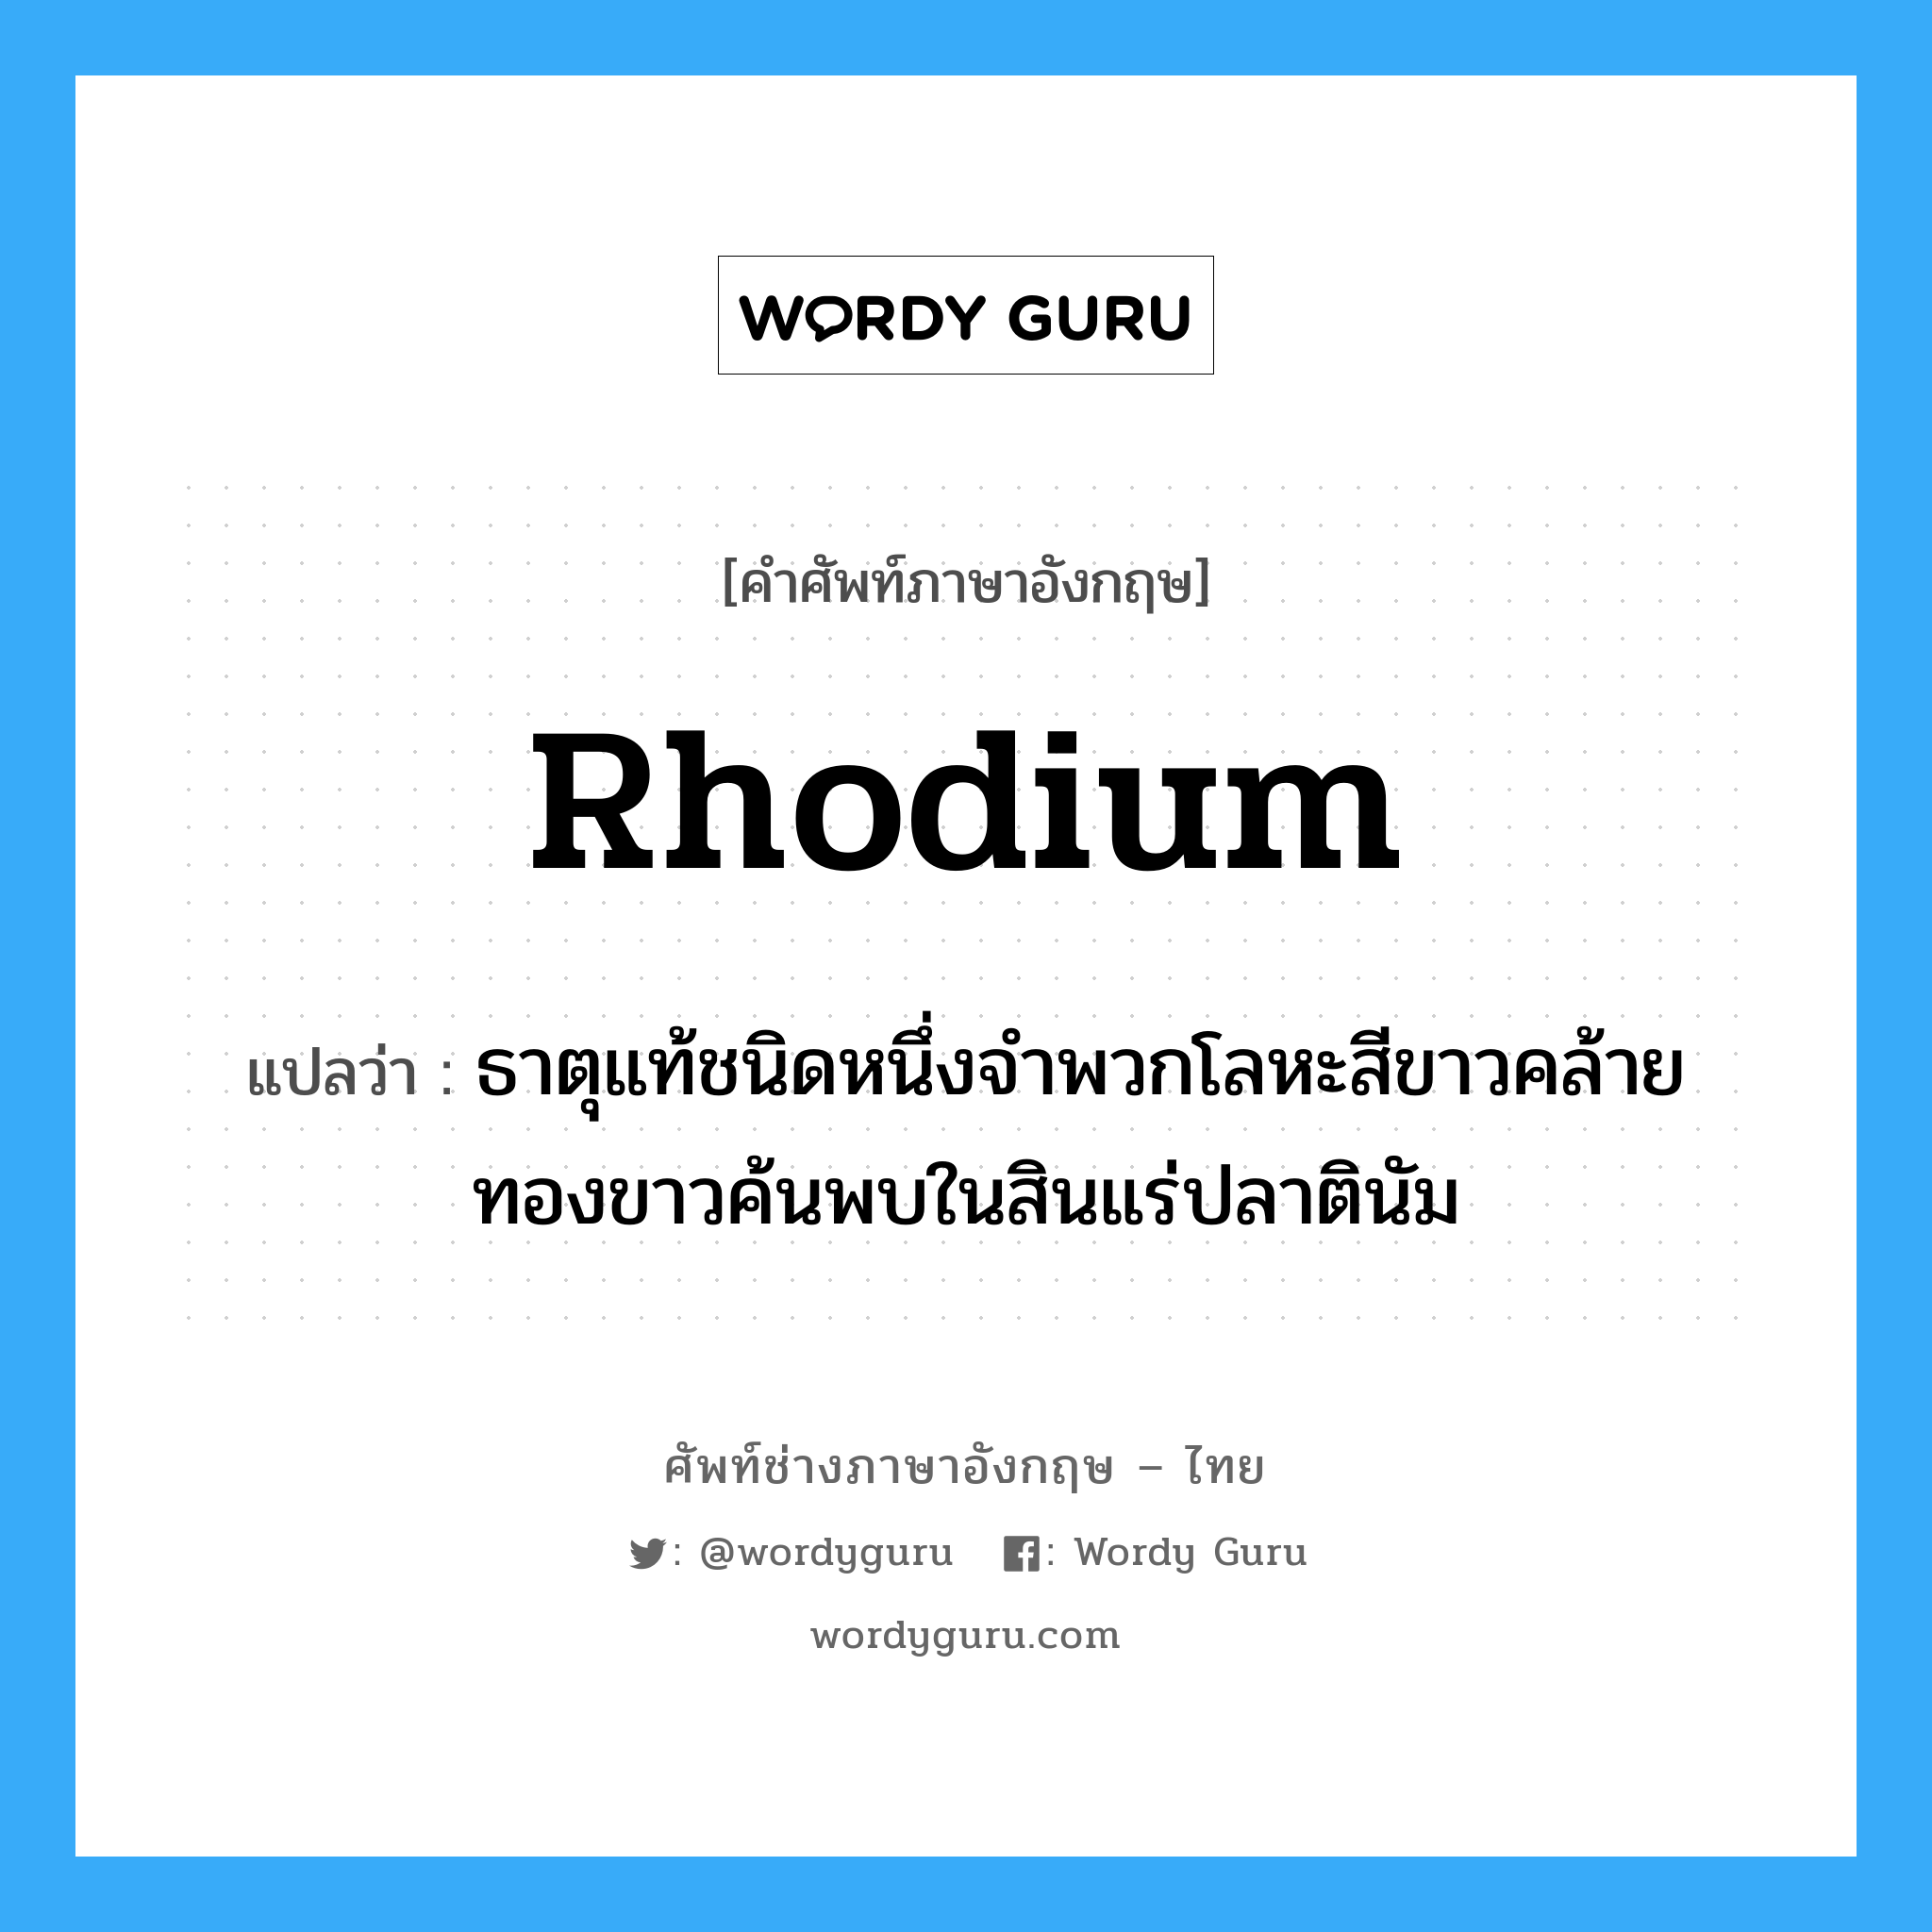 rhodium แปลว่า?, คำศัพท์ช่างภาษาอังกฤษ - ไทย rhodium คำศัพท์ภาษาอังกฤษ rhodium แปลว่า ธาตุแท้ชนิดหนึ่งจำพวกโลหะสีขาวคล้ายทองขาวค้นพบในสินแร่ปลาตินัม